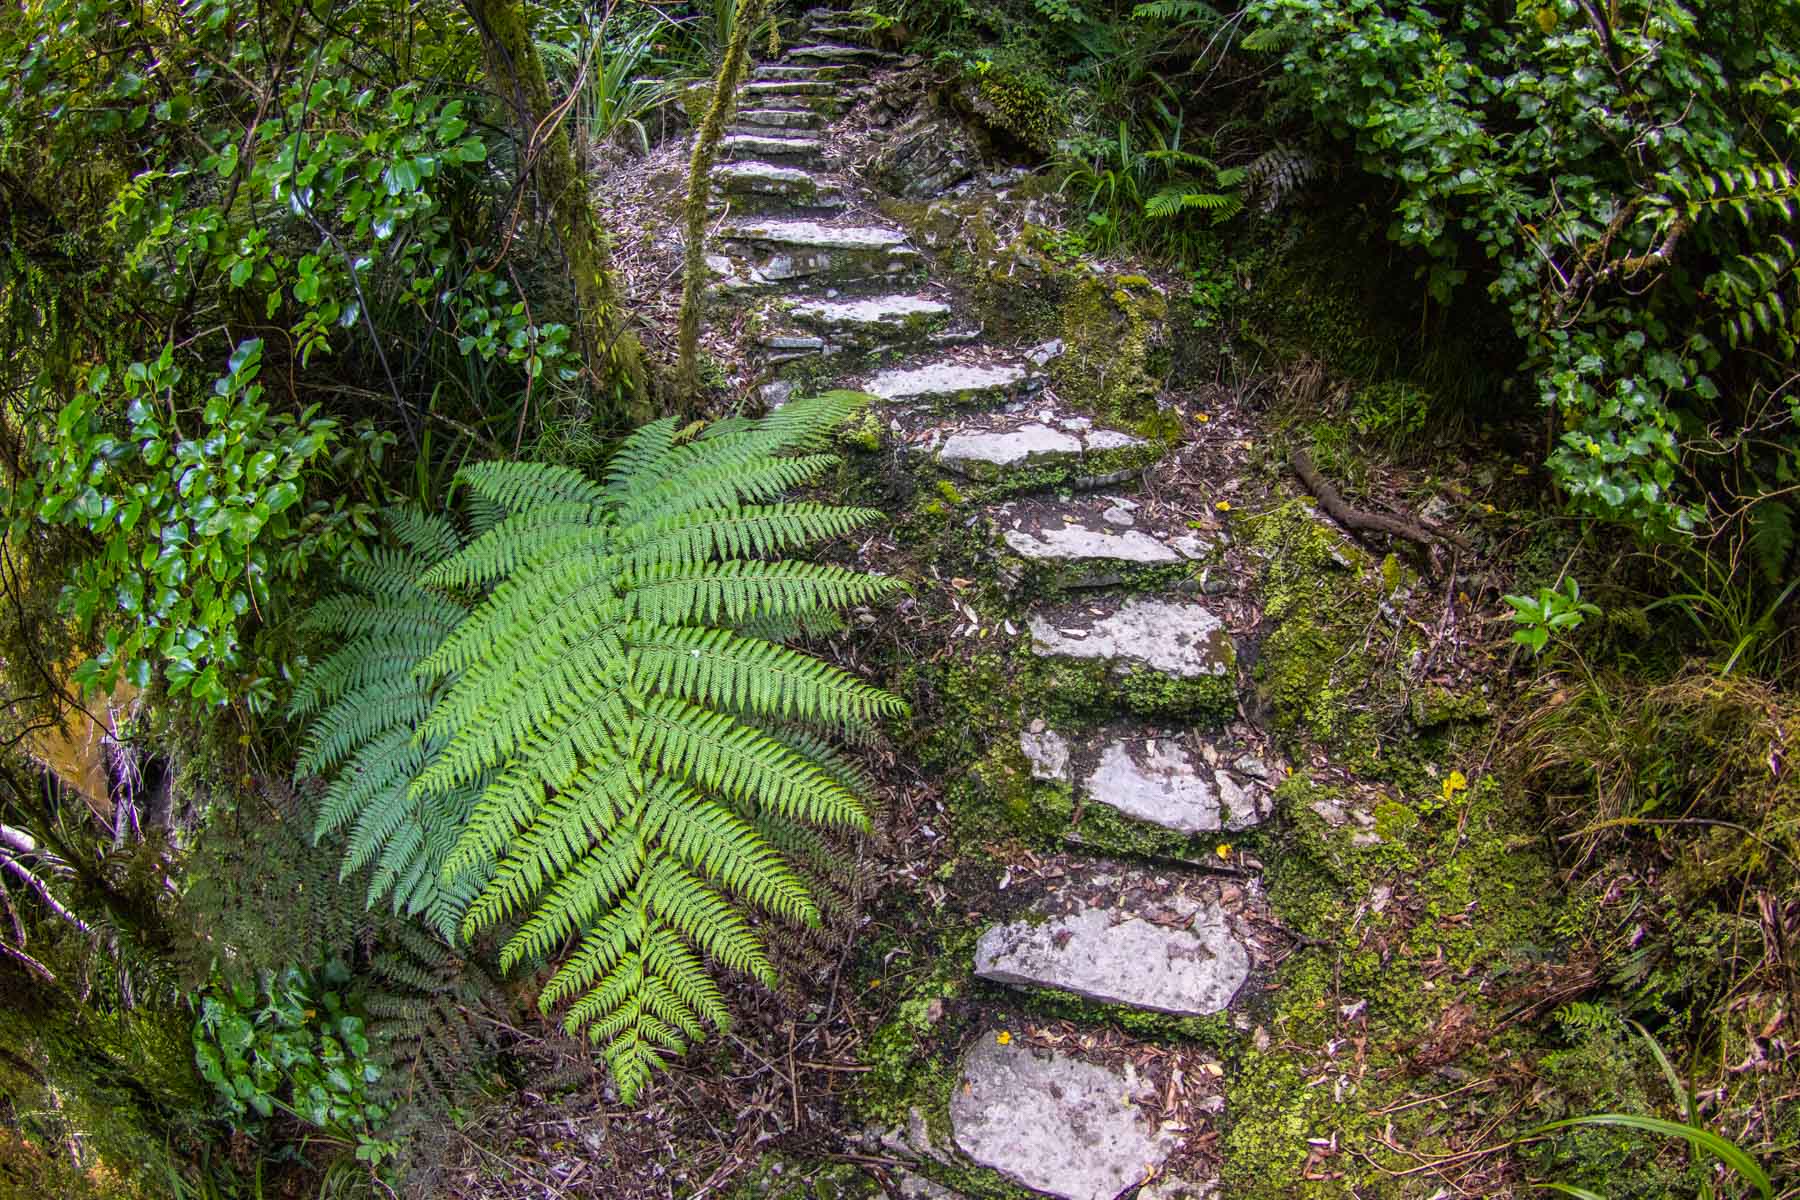 Un escalier fait de blocs de pierre plate grimpe dans la forêt où d’immenses fougères bordent le chemin.